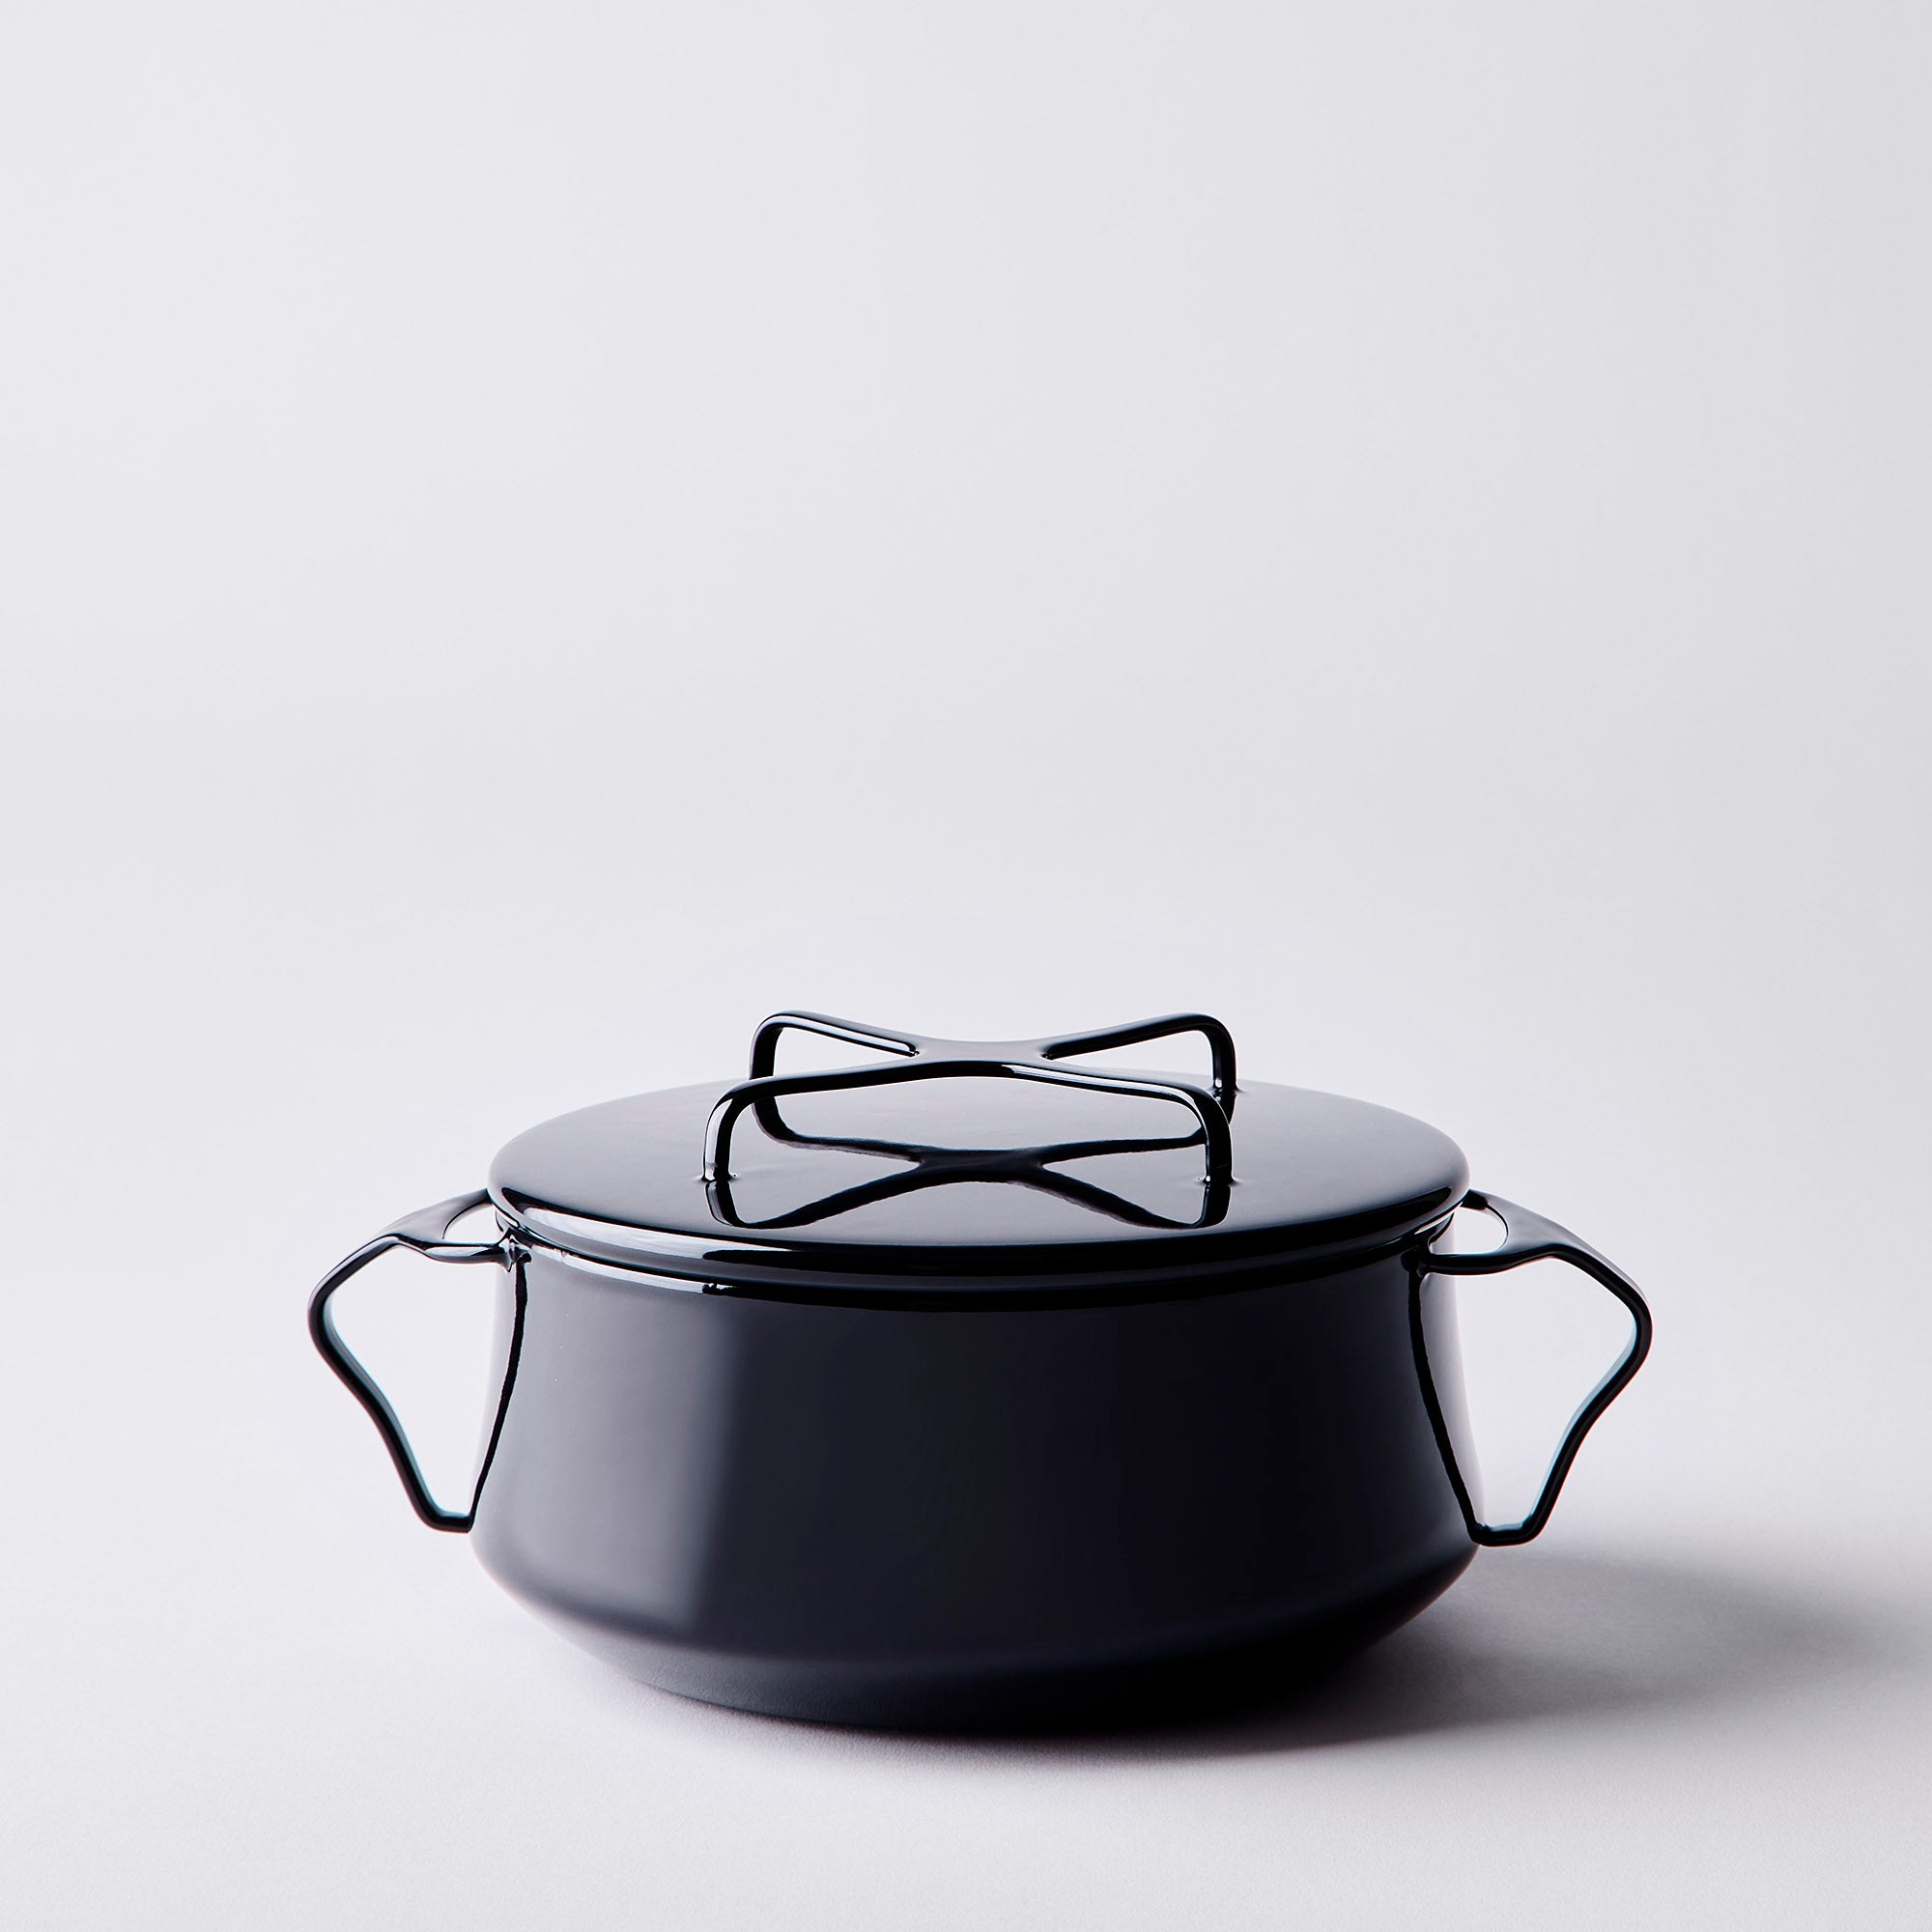 Quistgaard IHQ ANKERLINE dutch oven / casserole with teak stand Black  enamel Danish mid century design, New Arrivals